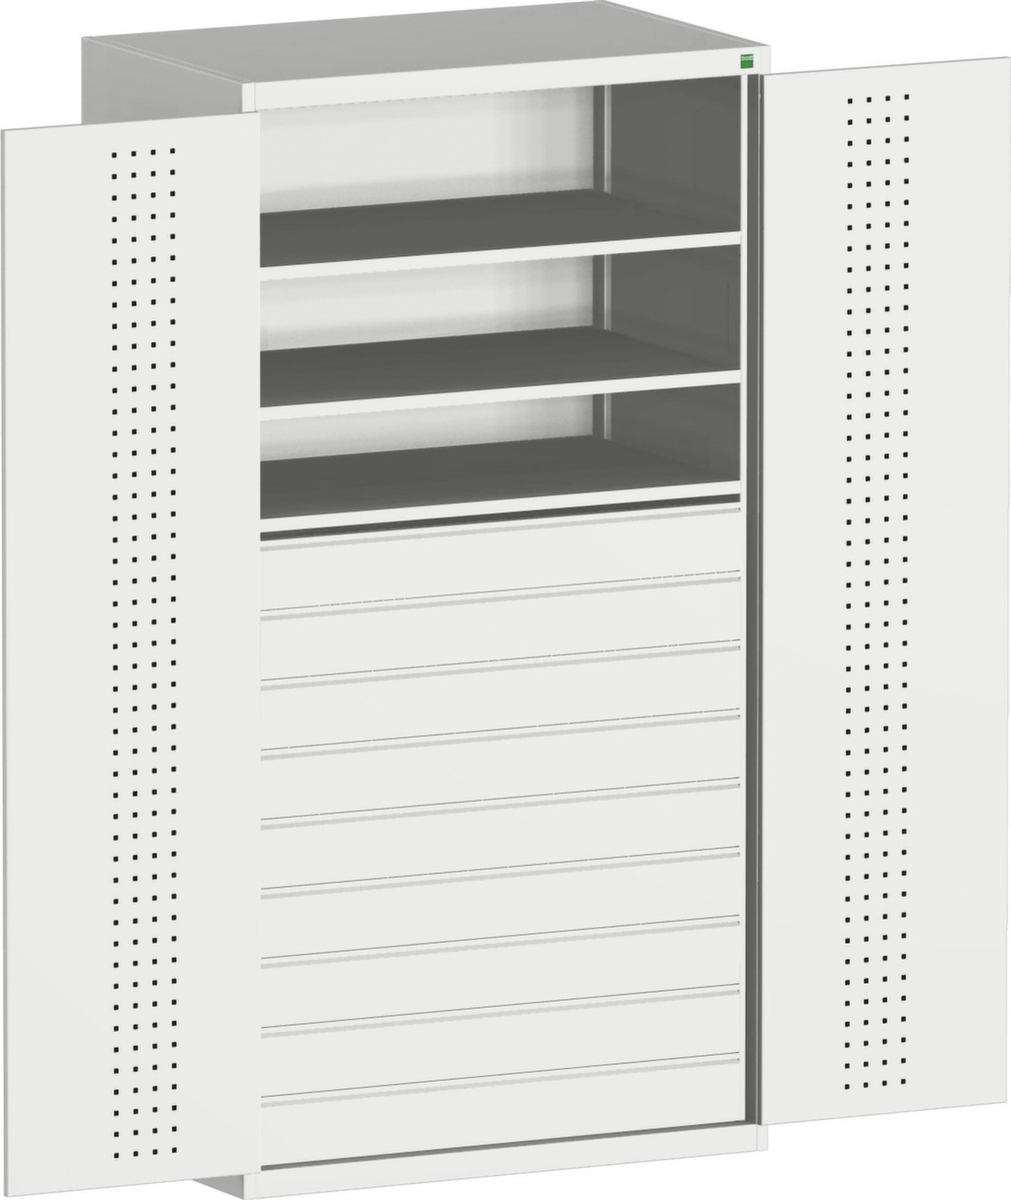 bott Armoire système cubio avec portes en panneaux perforés, 9 tiroir(s)